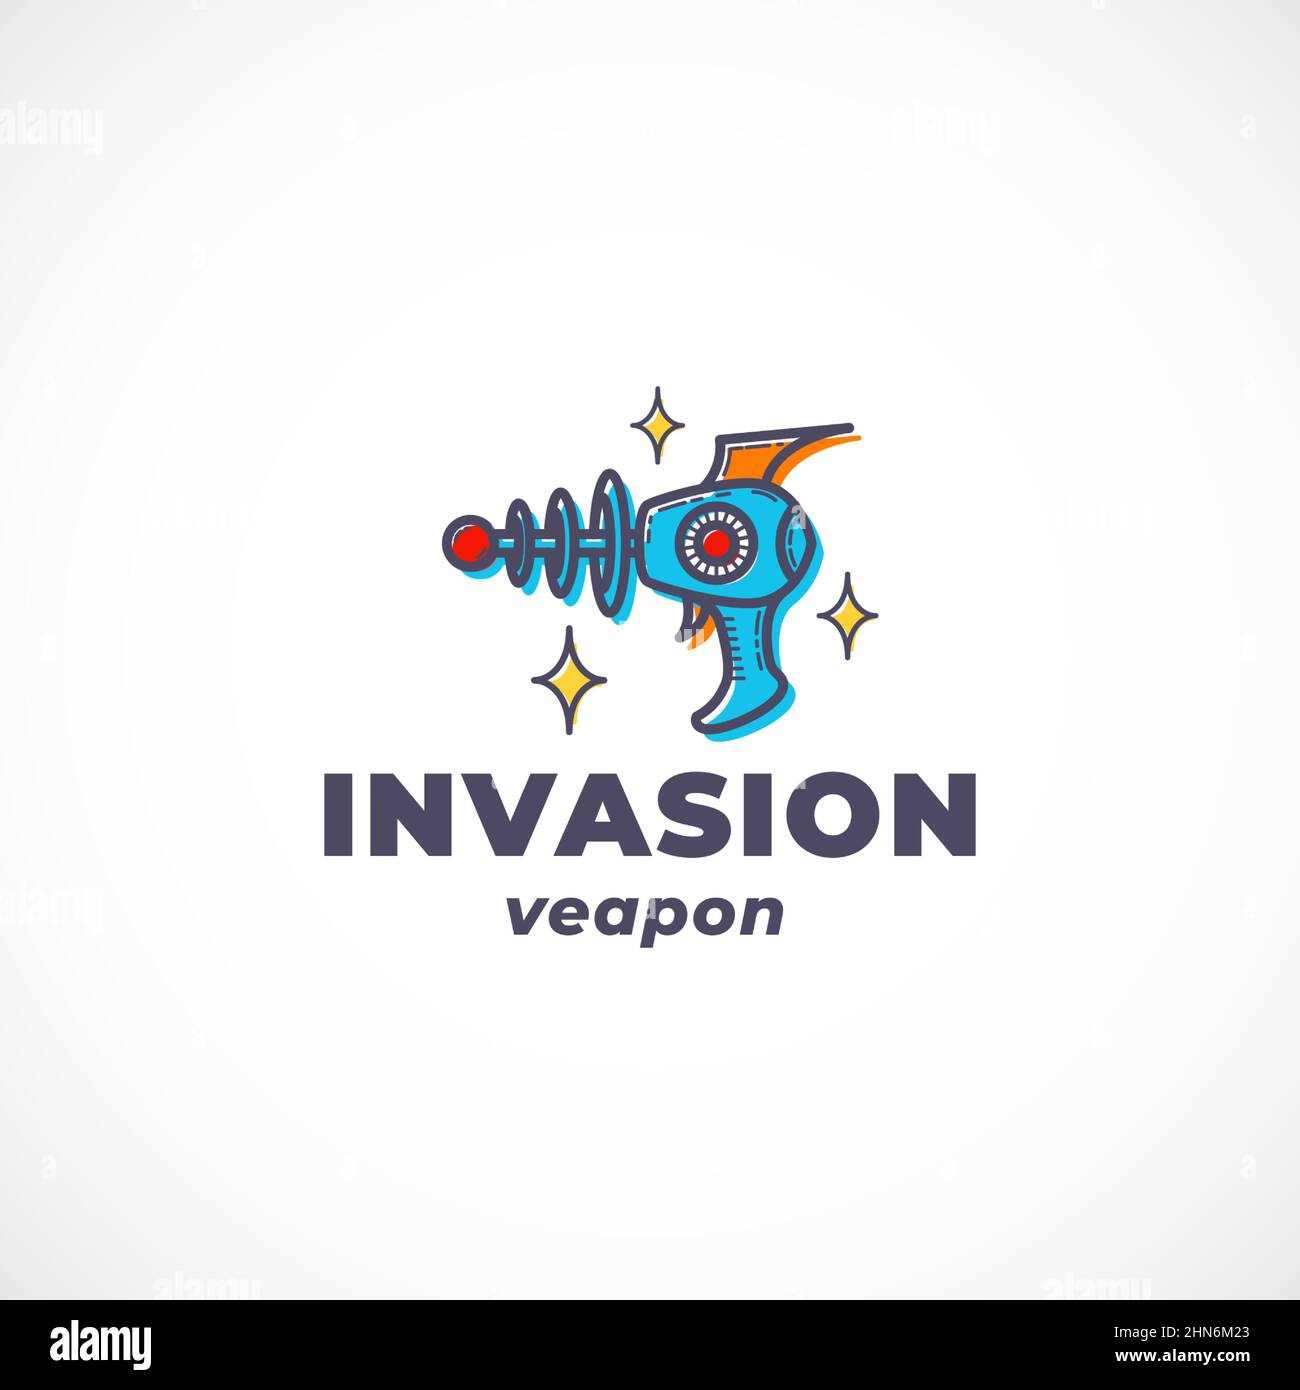 Alien Invasion Weapon Abstraktes Vektorzeichen, Symbol, Logo-Vorlage. Outline Retro Fantastic Gun Silhouette mit moderner Typografie. Science Fiction Stock Vektor